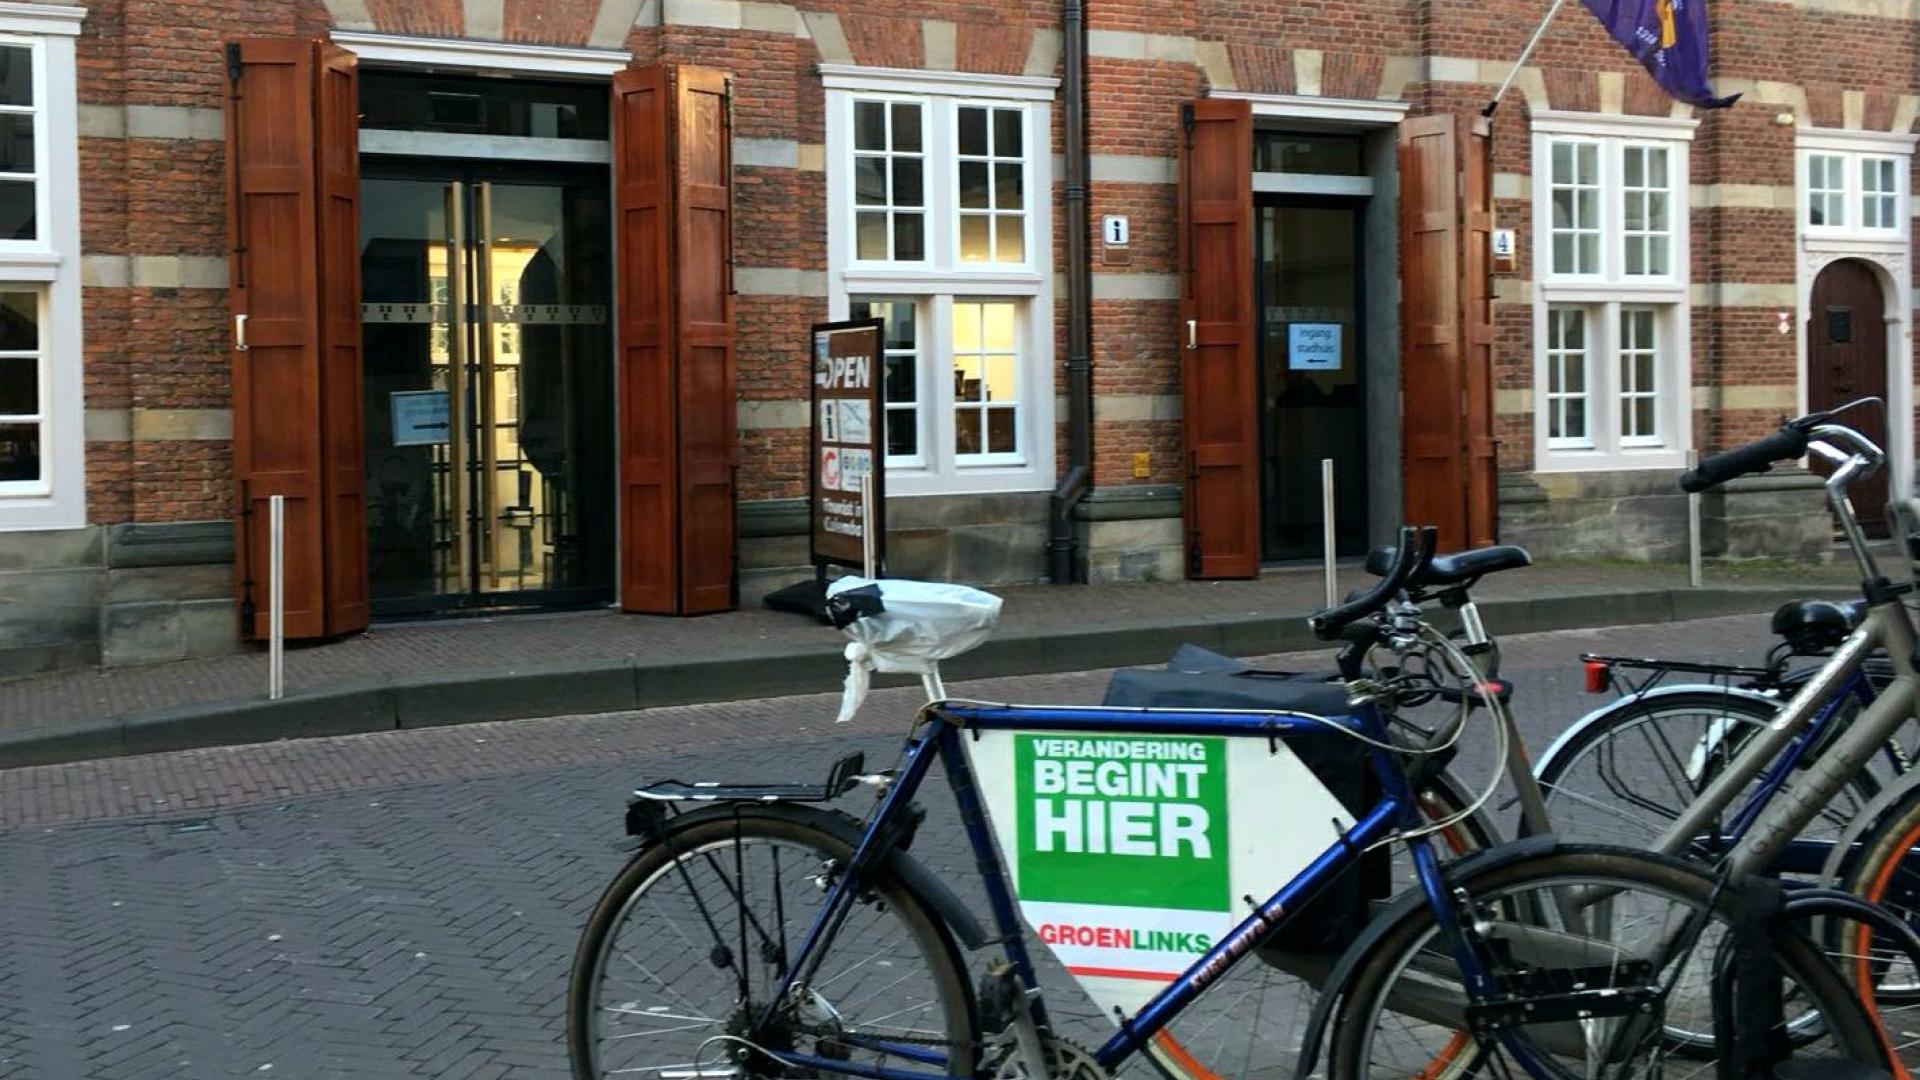 GroenLinks fiets stadhuis.jpg